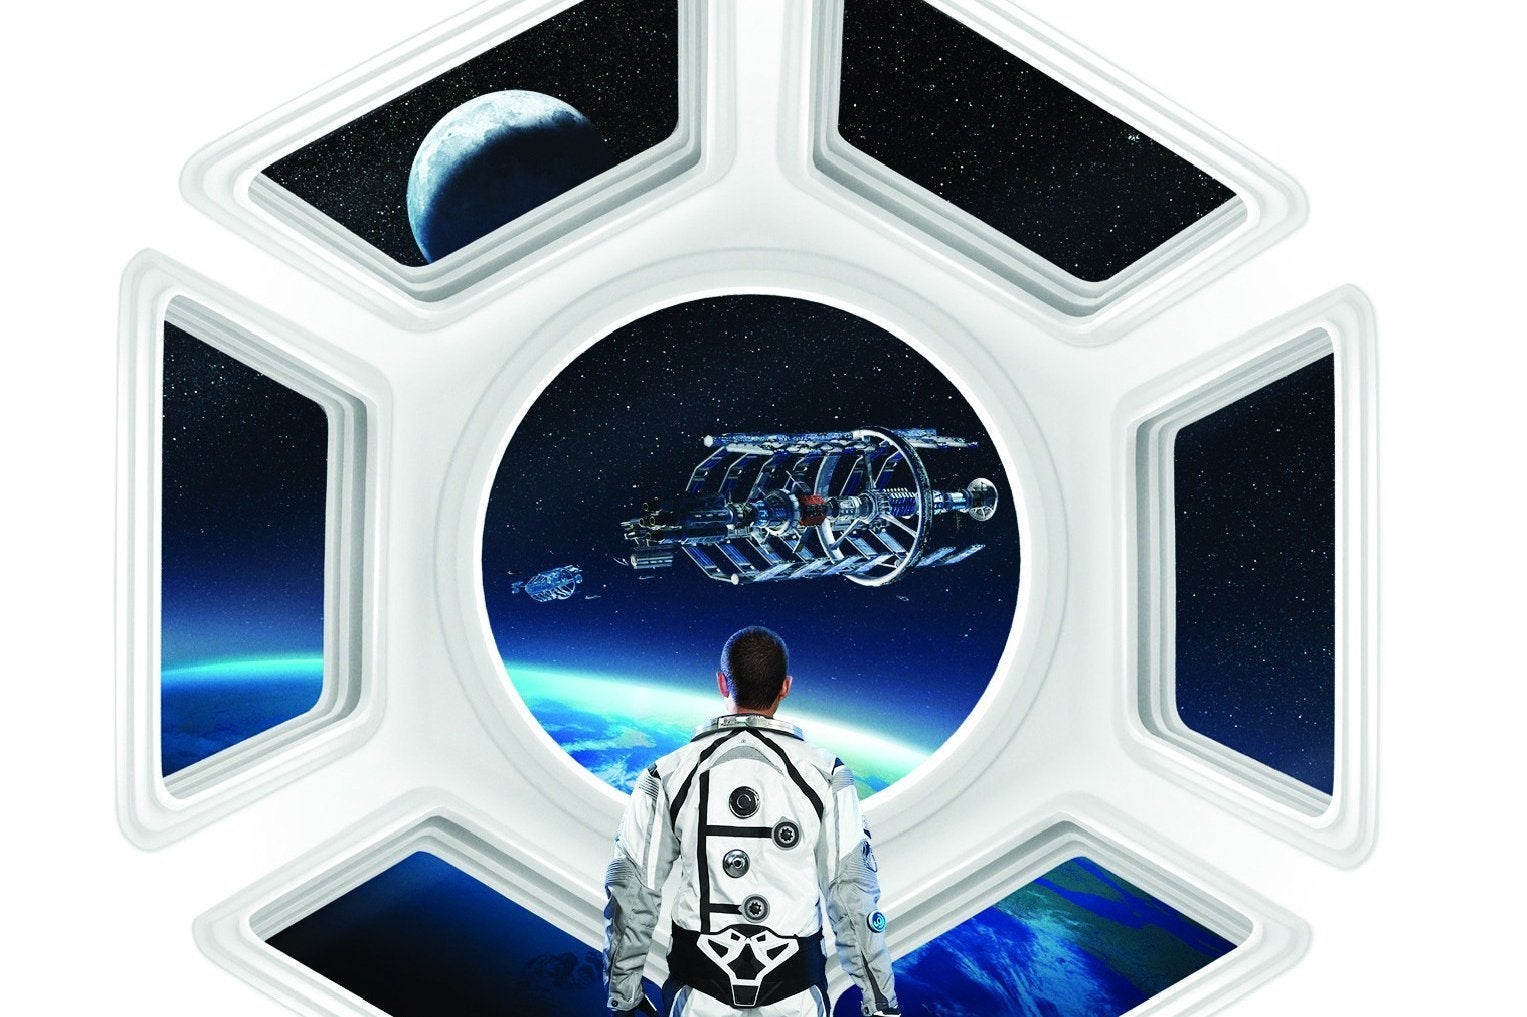 Immagine di Firaxis al lavoro sulla patch 2.0 di Civilization: Beyond Earth